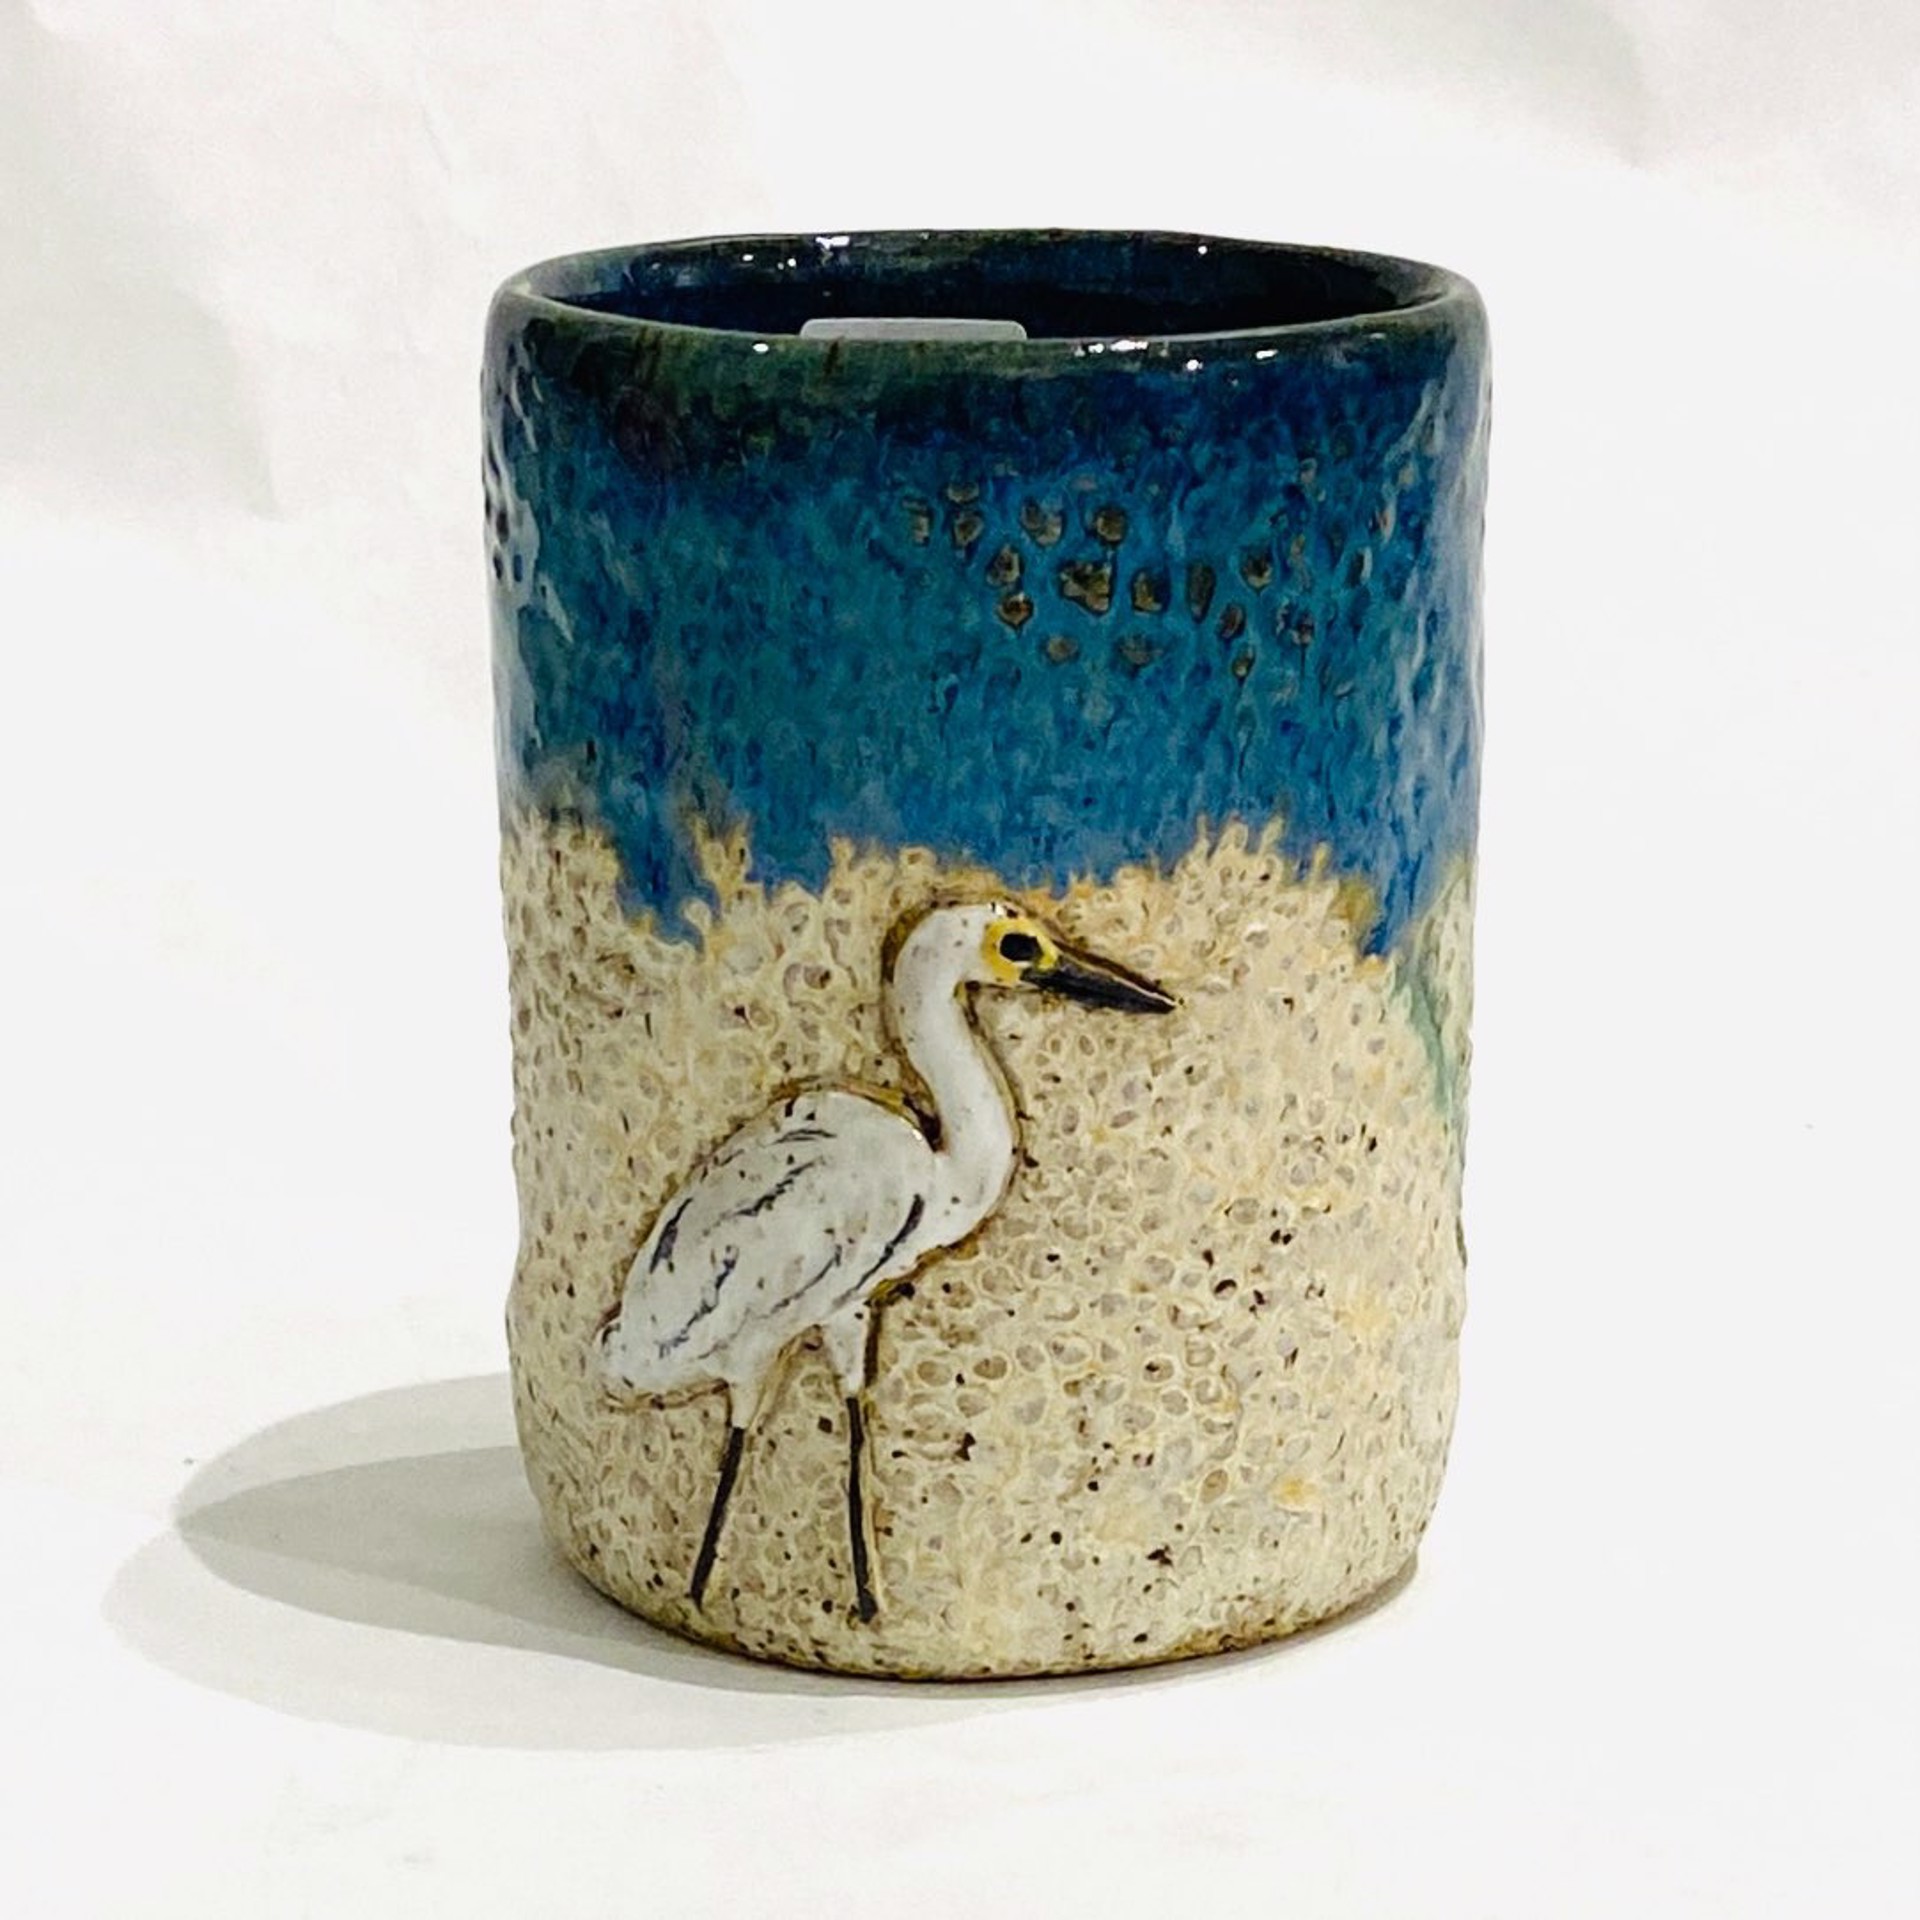 LG23-975a Heron Mug (Green Glaze) by Jim & Steffi Logan